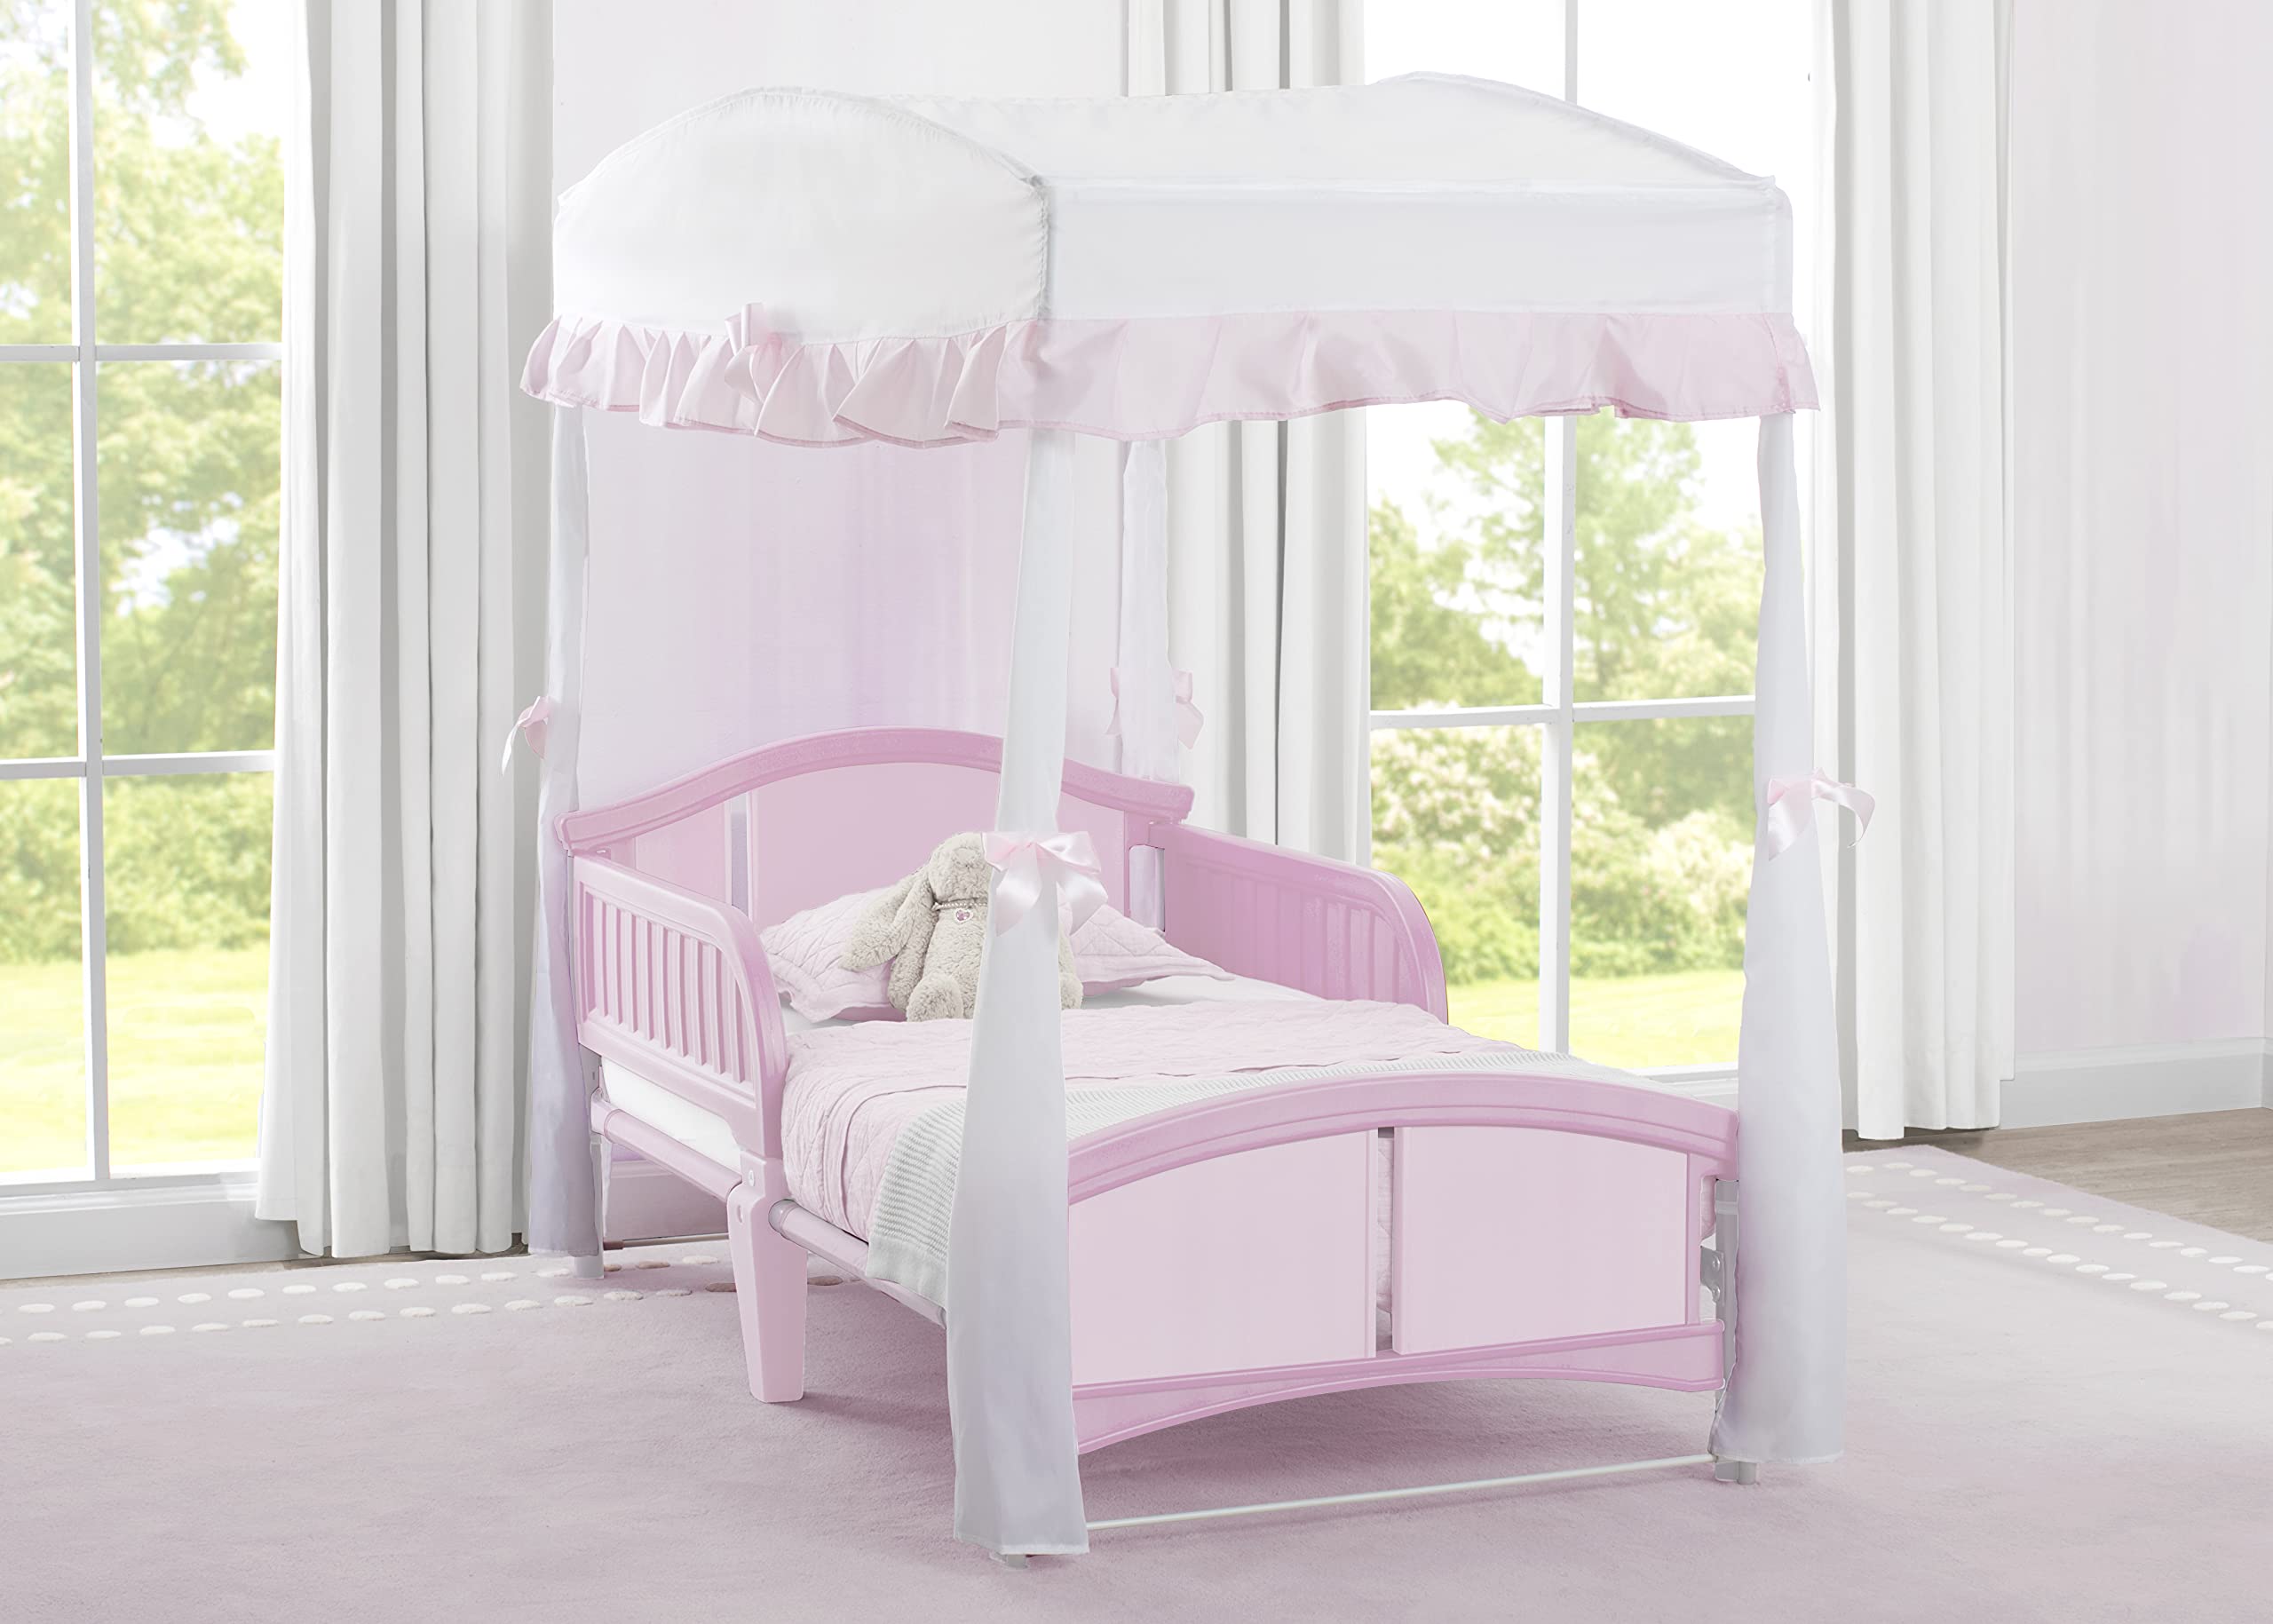 Delta Children Girls Canopy for Toddler Bed, White